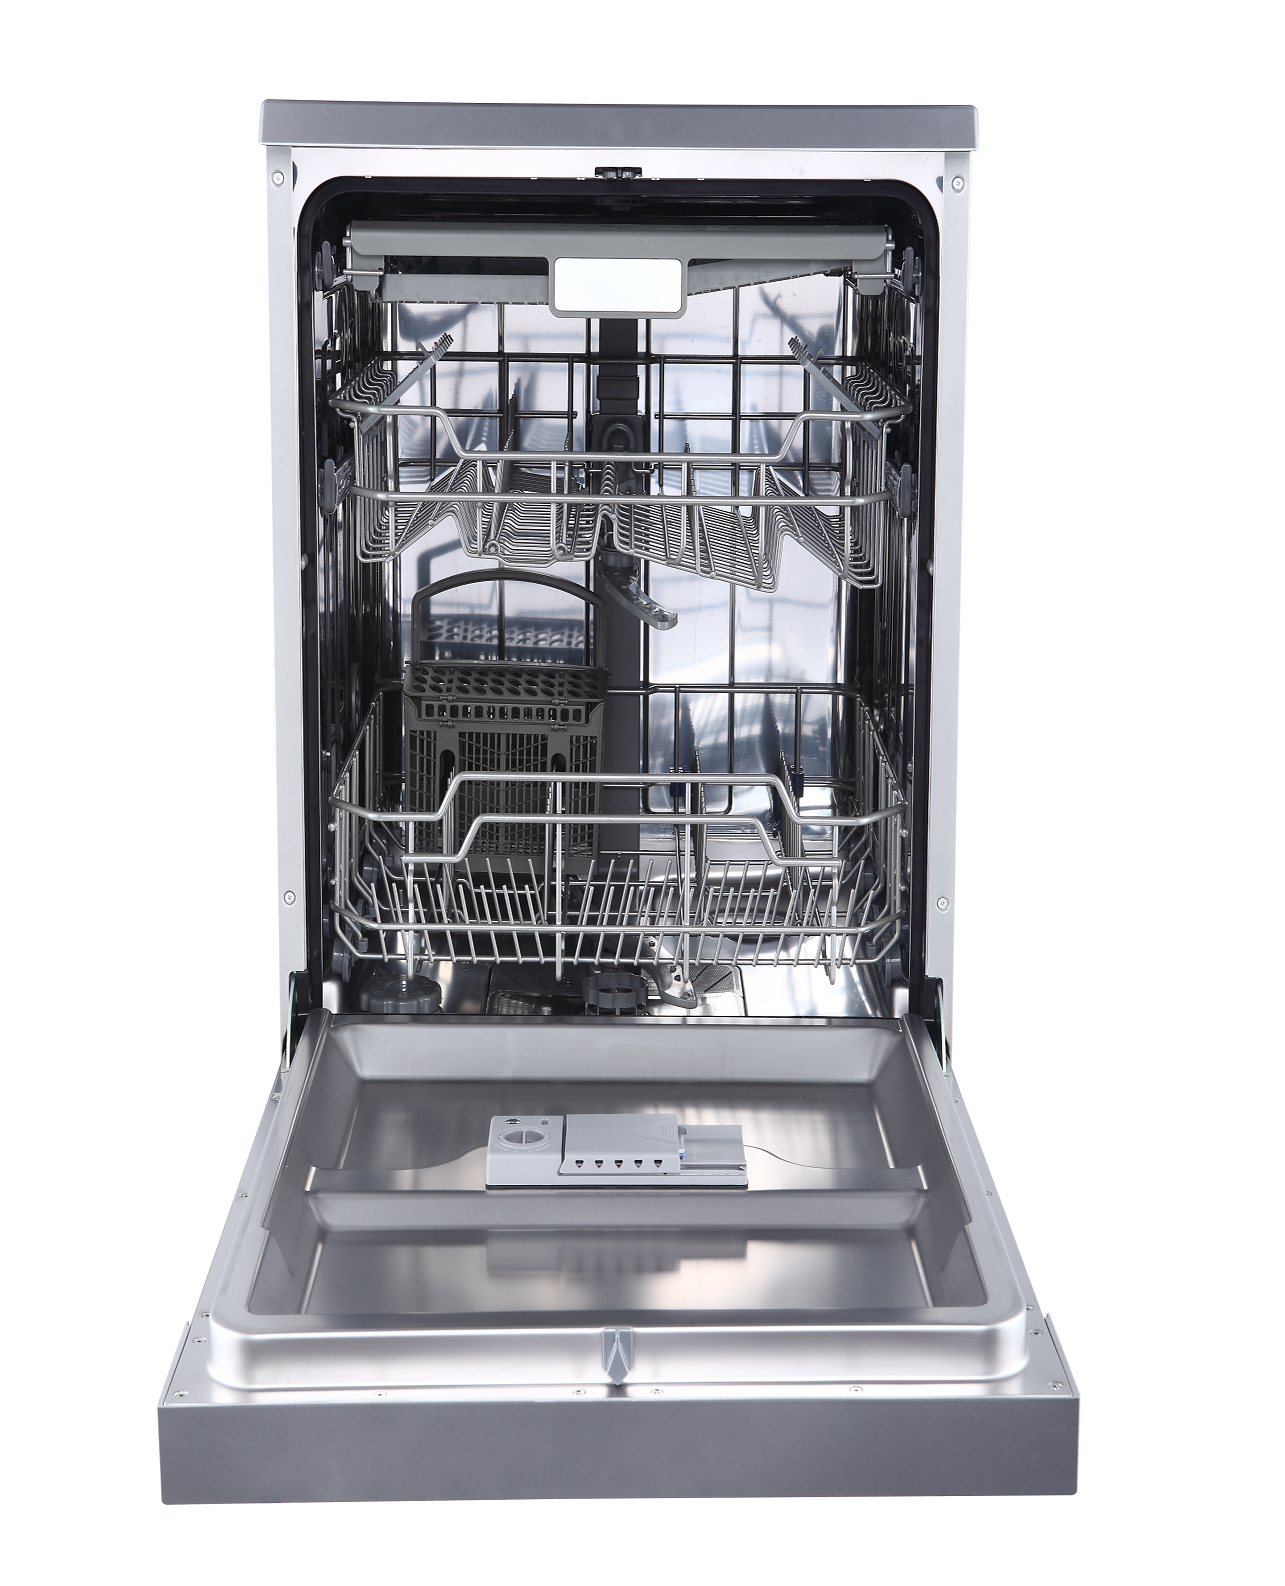 Посудомоечные машины aeg: топ - 5 лучших моделей